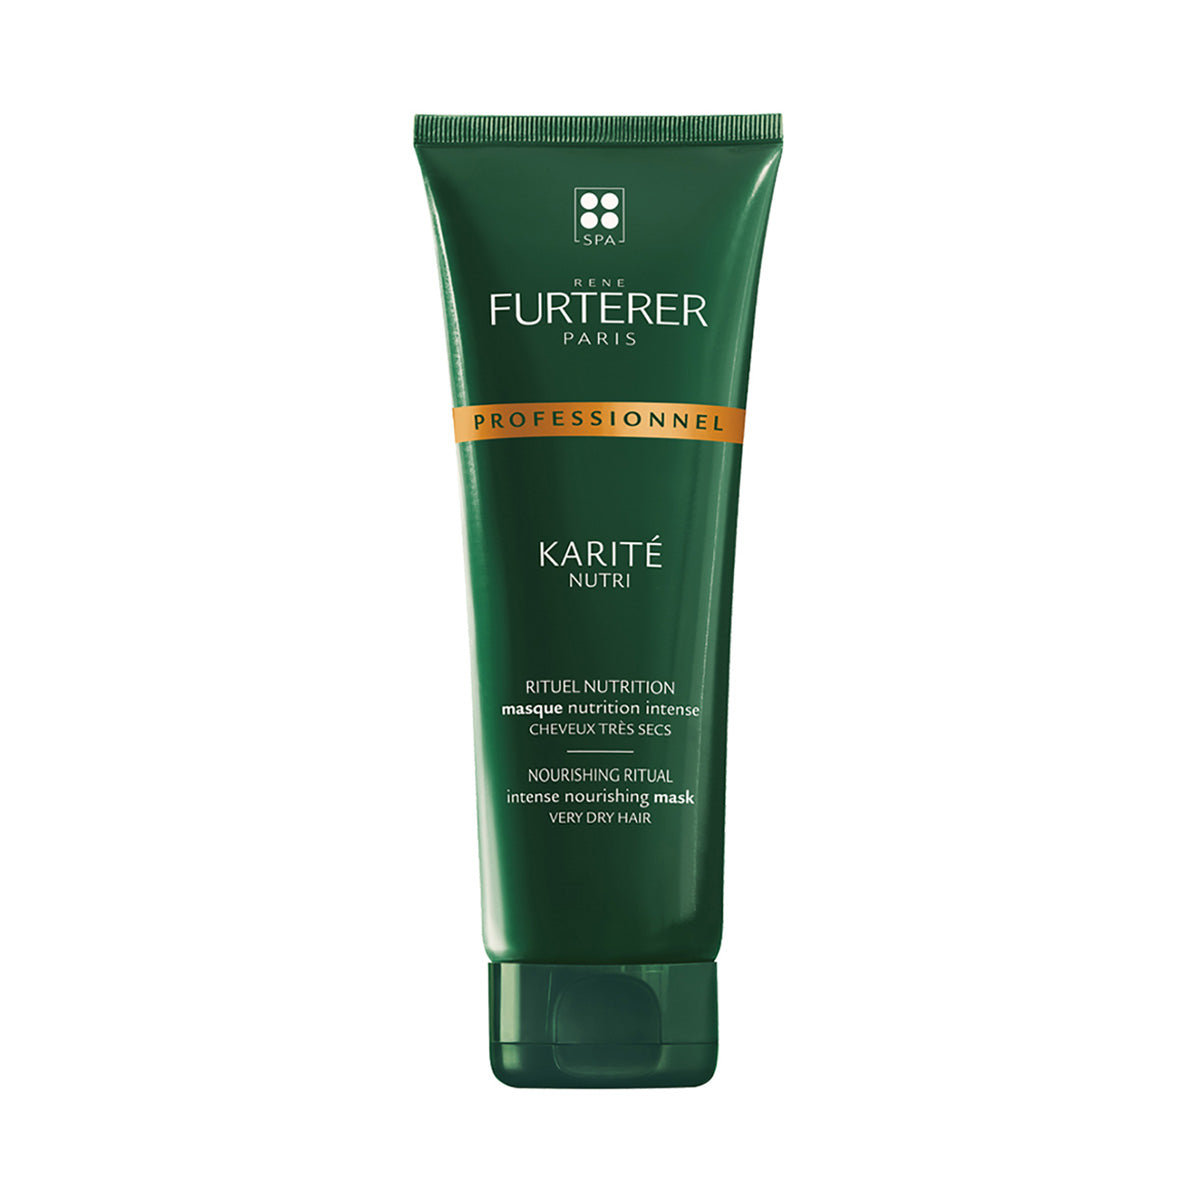 Rene Furtere|Karite Nutri Intense Nourishing Mask|250ml